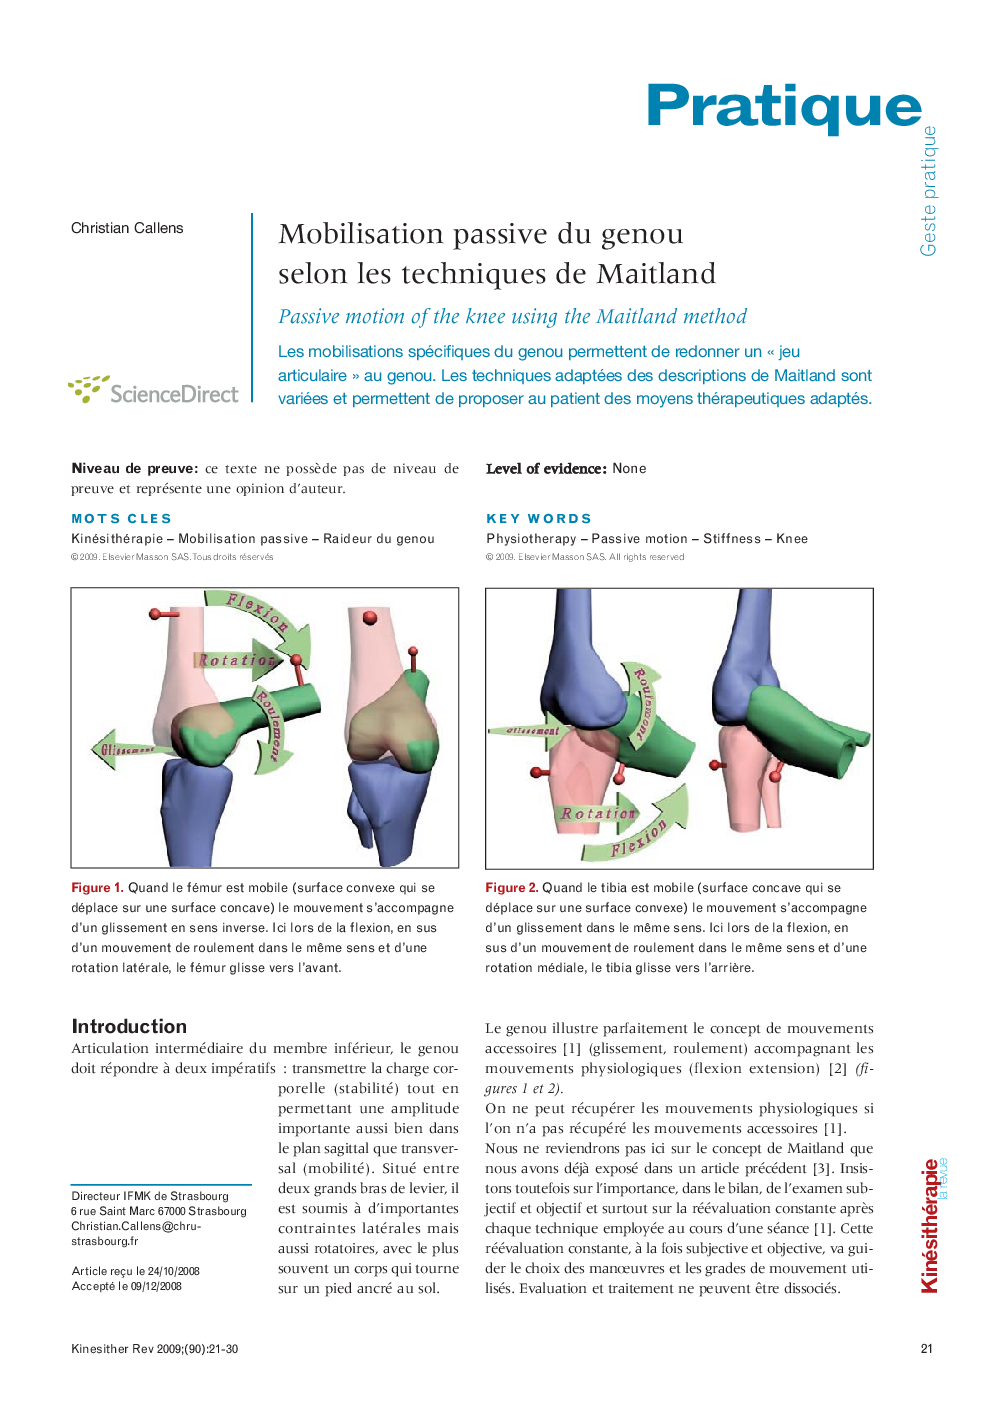  Mobilisation passive du genou selon les techniques de Maitland: Passive motion of the knee using the Maitland method